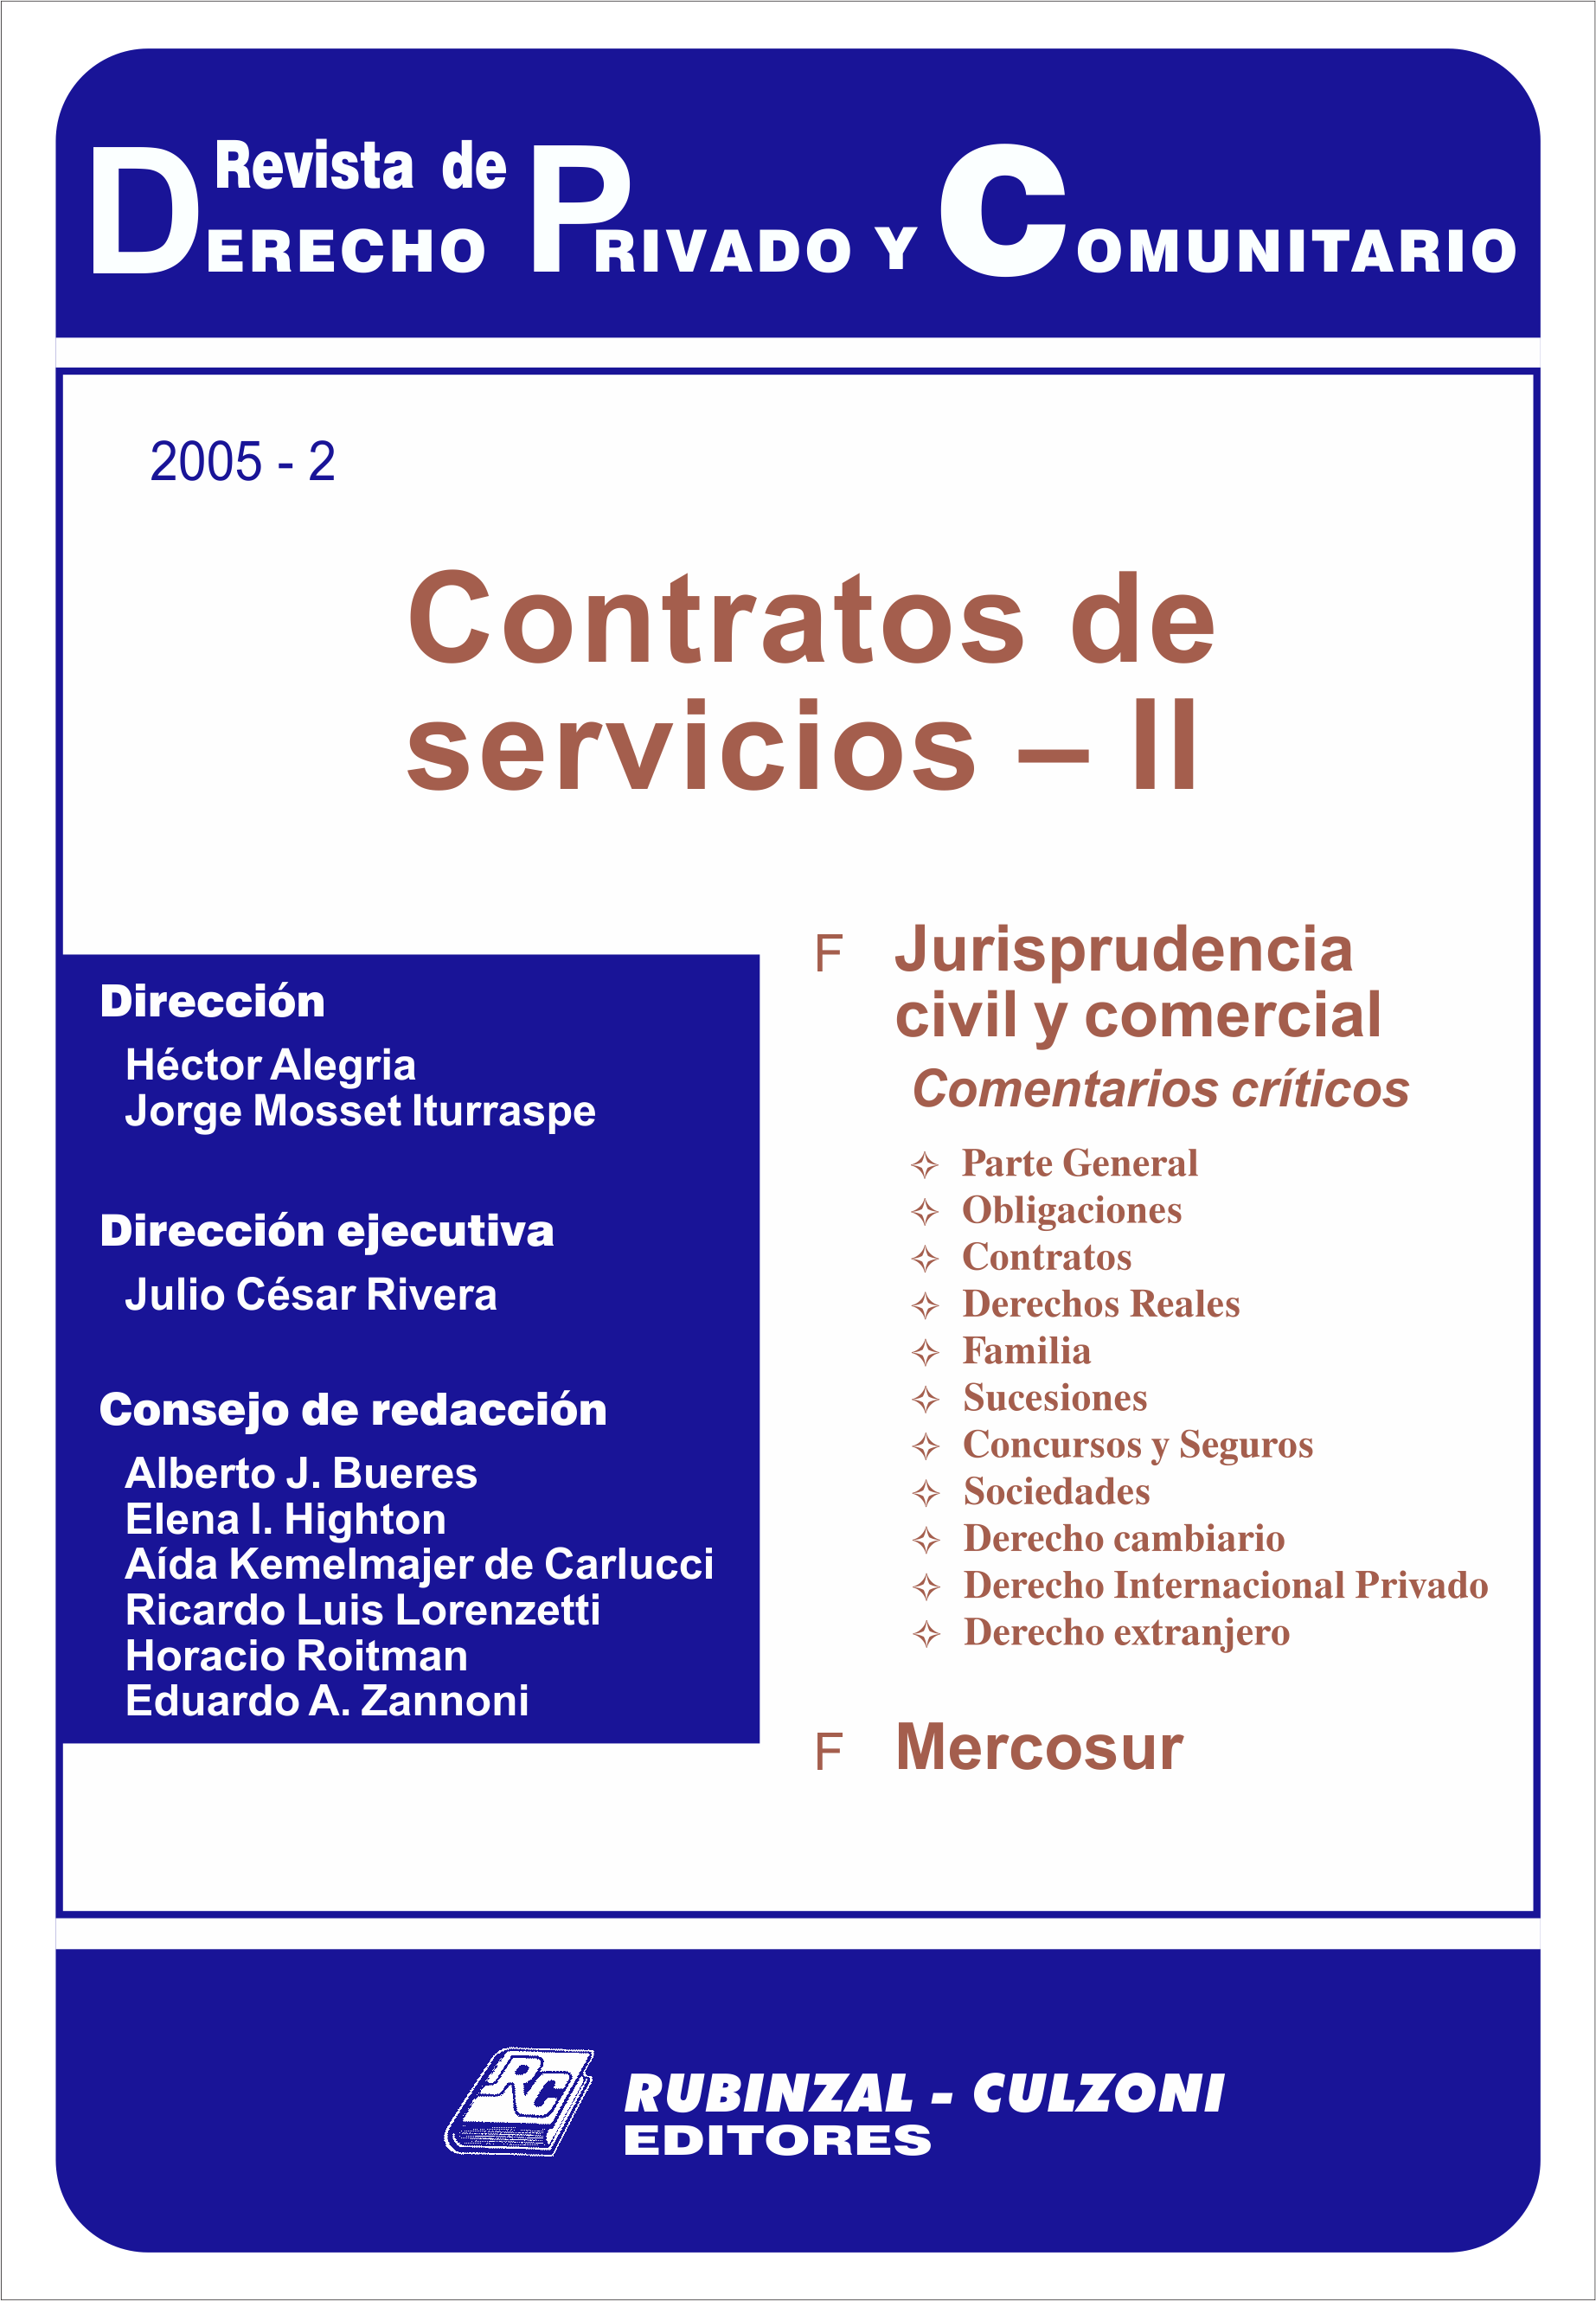 Revista de Derecho Privado y Comunitario - Contratos de servicios - II